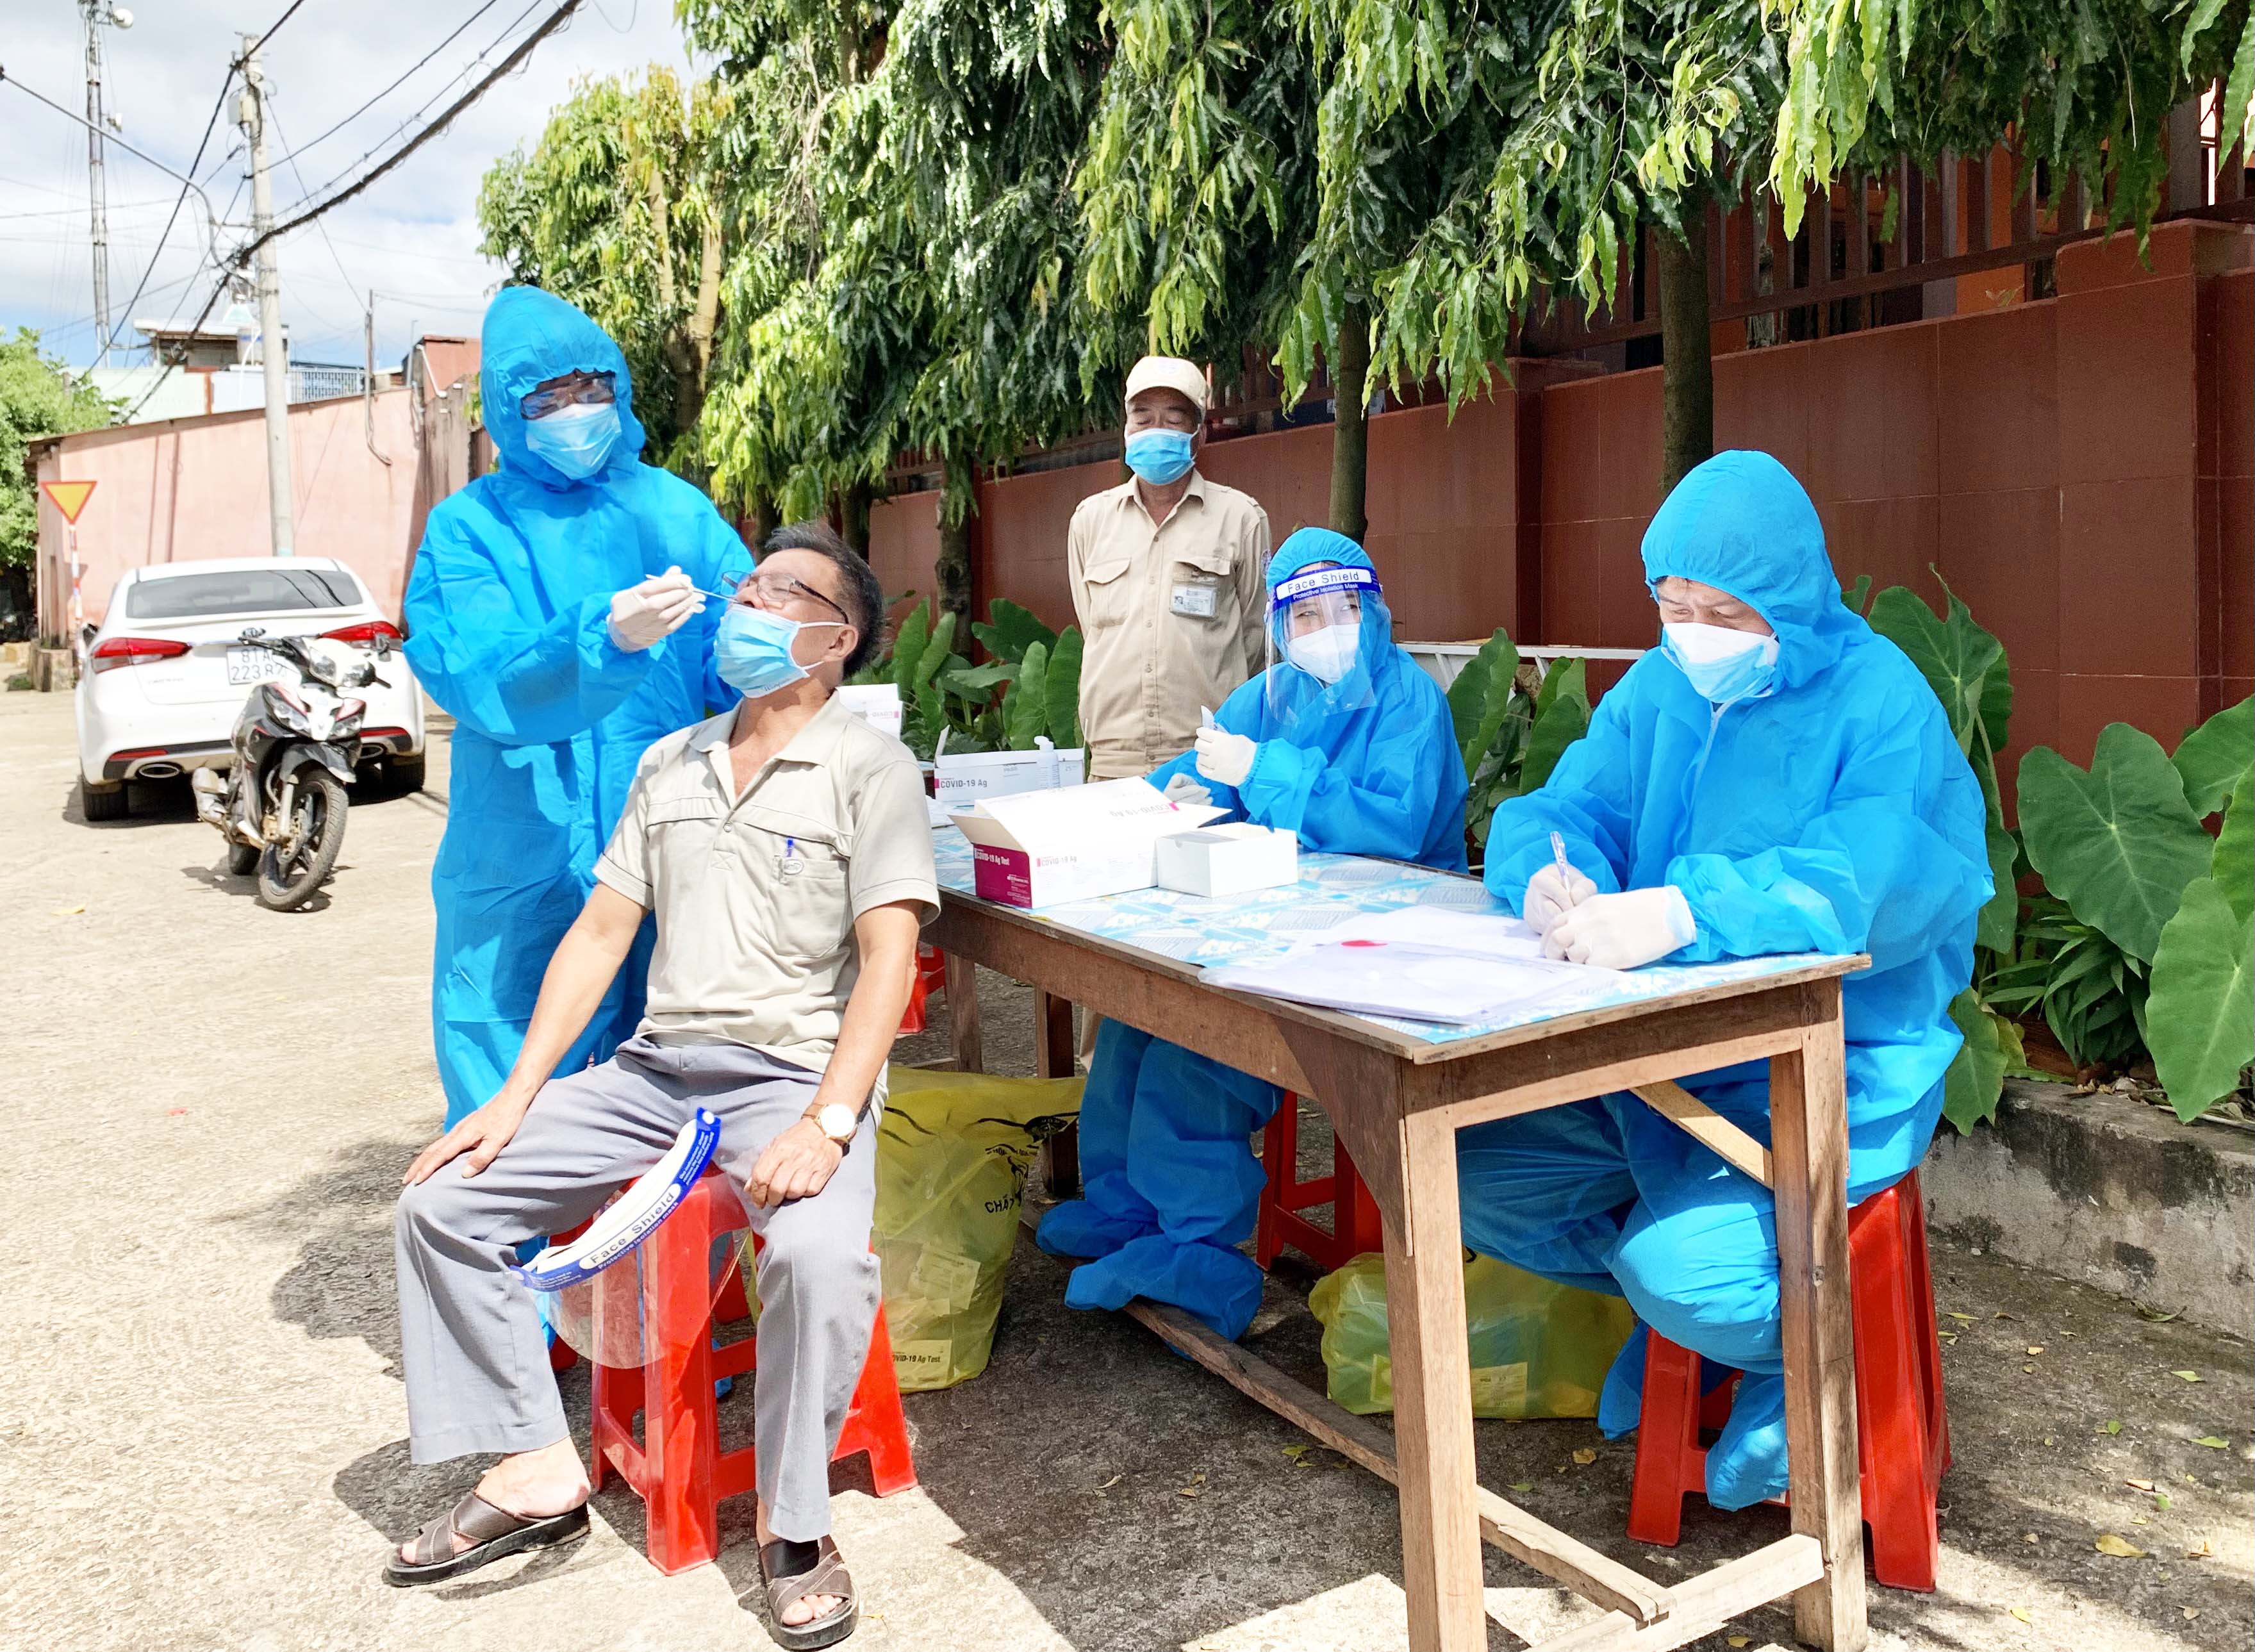 Nhân viên y tế lấy mẫu xét nghiệm cho người dân khu vực chợ Bà Định. Ảnh: Như Nguyện